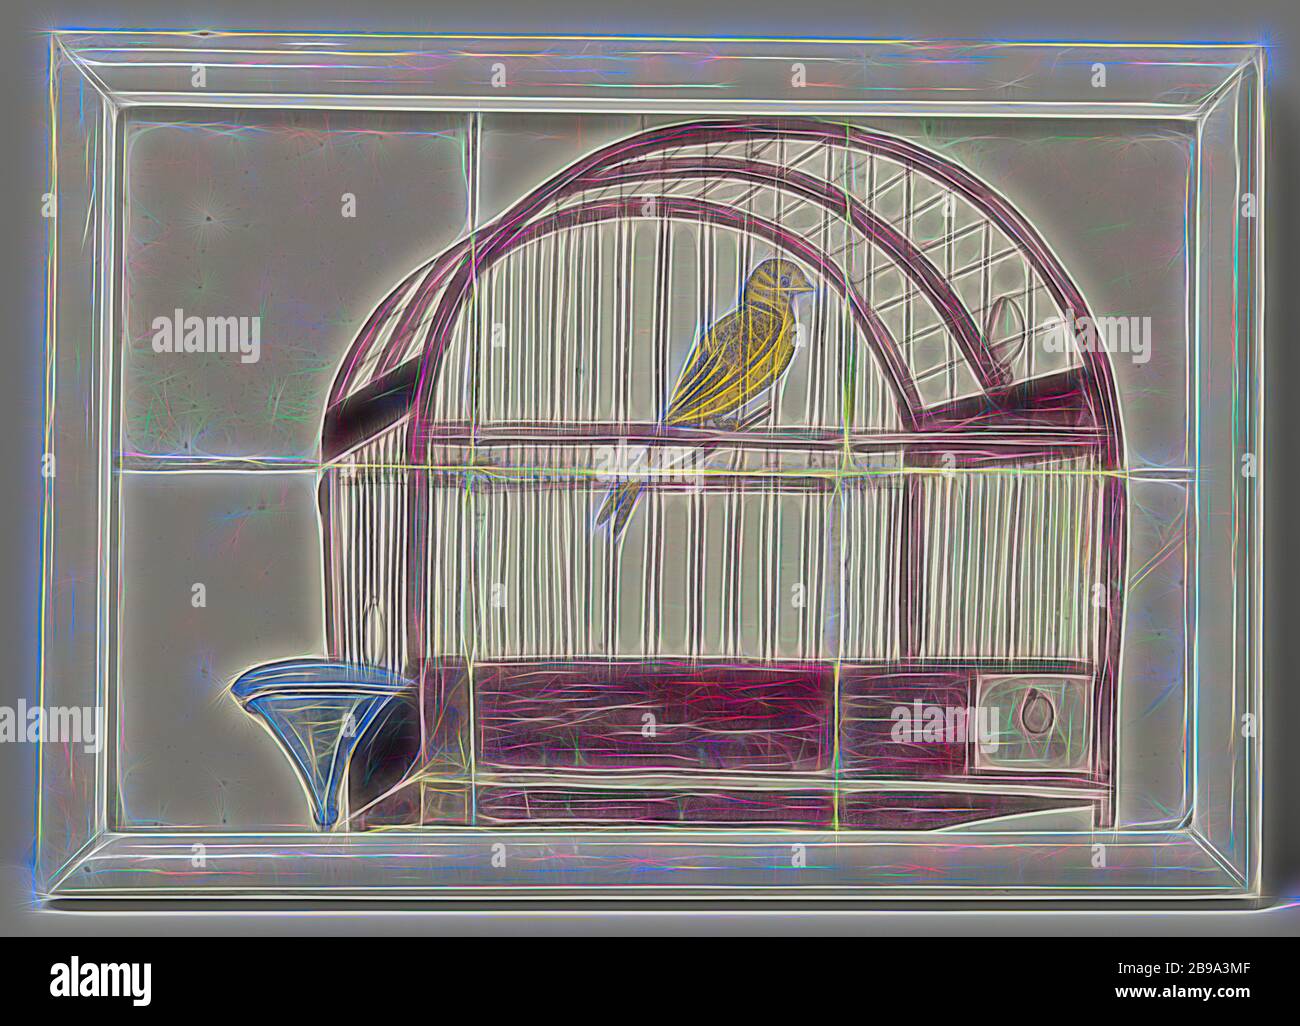 Pannello di tegole, dipinto con una rappresentazione di una gabbia di uccelli, pannello di tegole di sei tegole (2x3), dipinto in viola, blu e giallo con una rappresentazione di una gabbia di uccelli con abbeveratoio., toro, anonimo, Olanda, c. 1750 - c. 1800, h 25 cm × l 37.5 cm h 29 cm × l 41.5 cm × d 4 cm, Reimagined by Gibon, design di calda e allegra luce di luminosità e di luminosità. Arte classica reinventata con un tocco moderno. La fotografia ispirata al futurismo, abbracciando l'energia dinamica della tecnologia moderna, del movimento, della velocità e rivoluzionando la cultura. Foto Stock